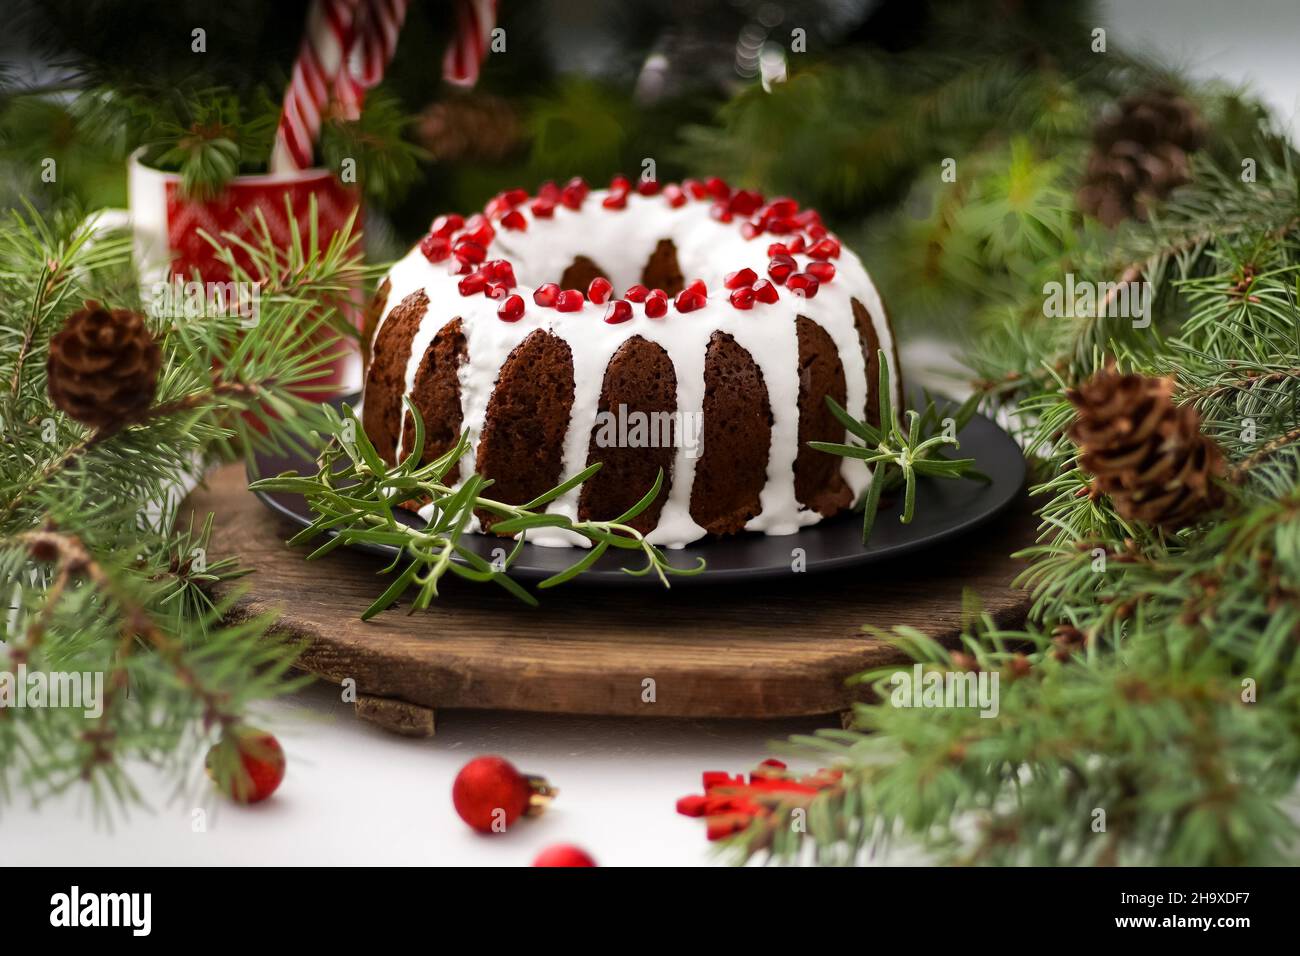 Weihnachtliches Essen. Runde Torte mit weißer Glasur. Cupcake mit einem Loch in der Mitte mit Granatapfel. Grüne Fichtenzweige auf dem Tisch. Stillleben. Süßes Gebäck, Desserts und Leckereien für das neue Jahr. Stockfoto